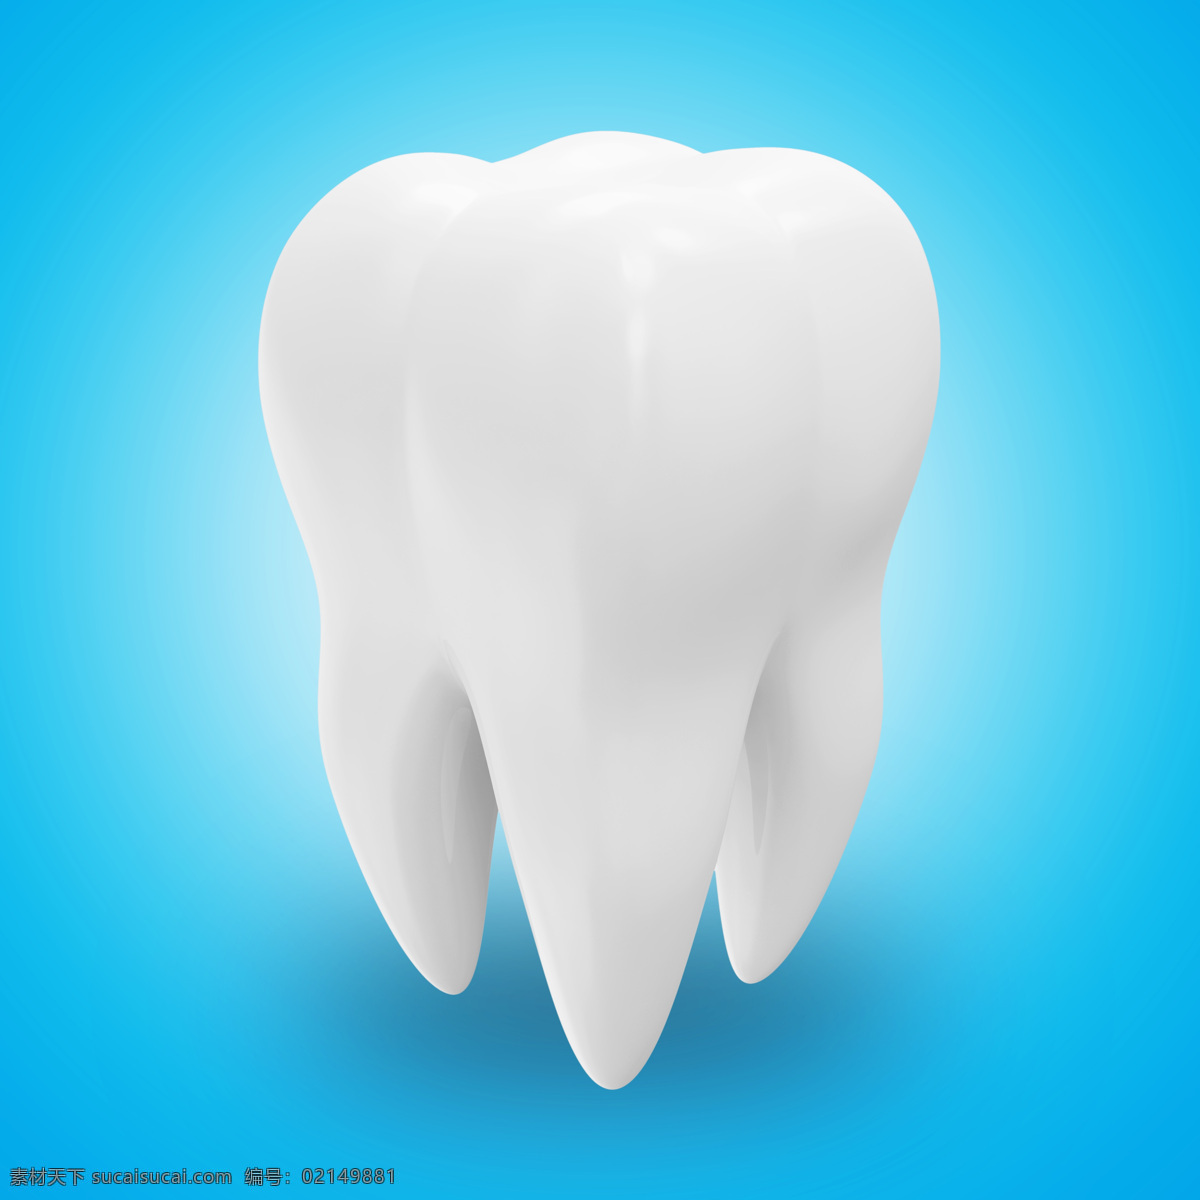 牙齿 模型 牙齿模型 保护牙齿 牙科 健康牙齿 人体器官 人体器官图 人物图片